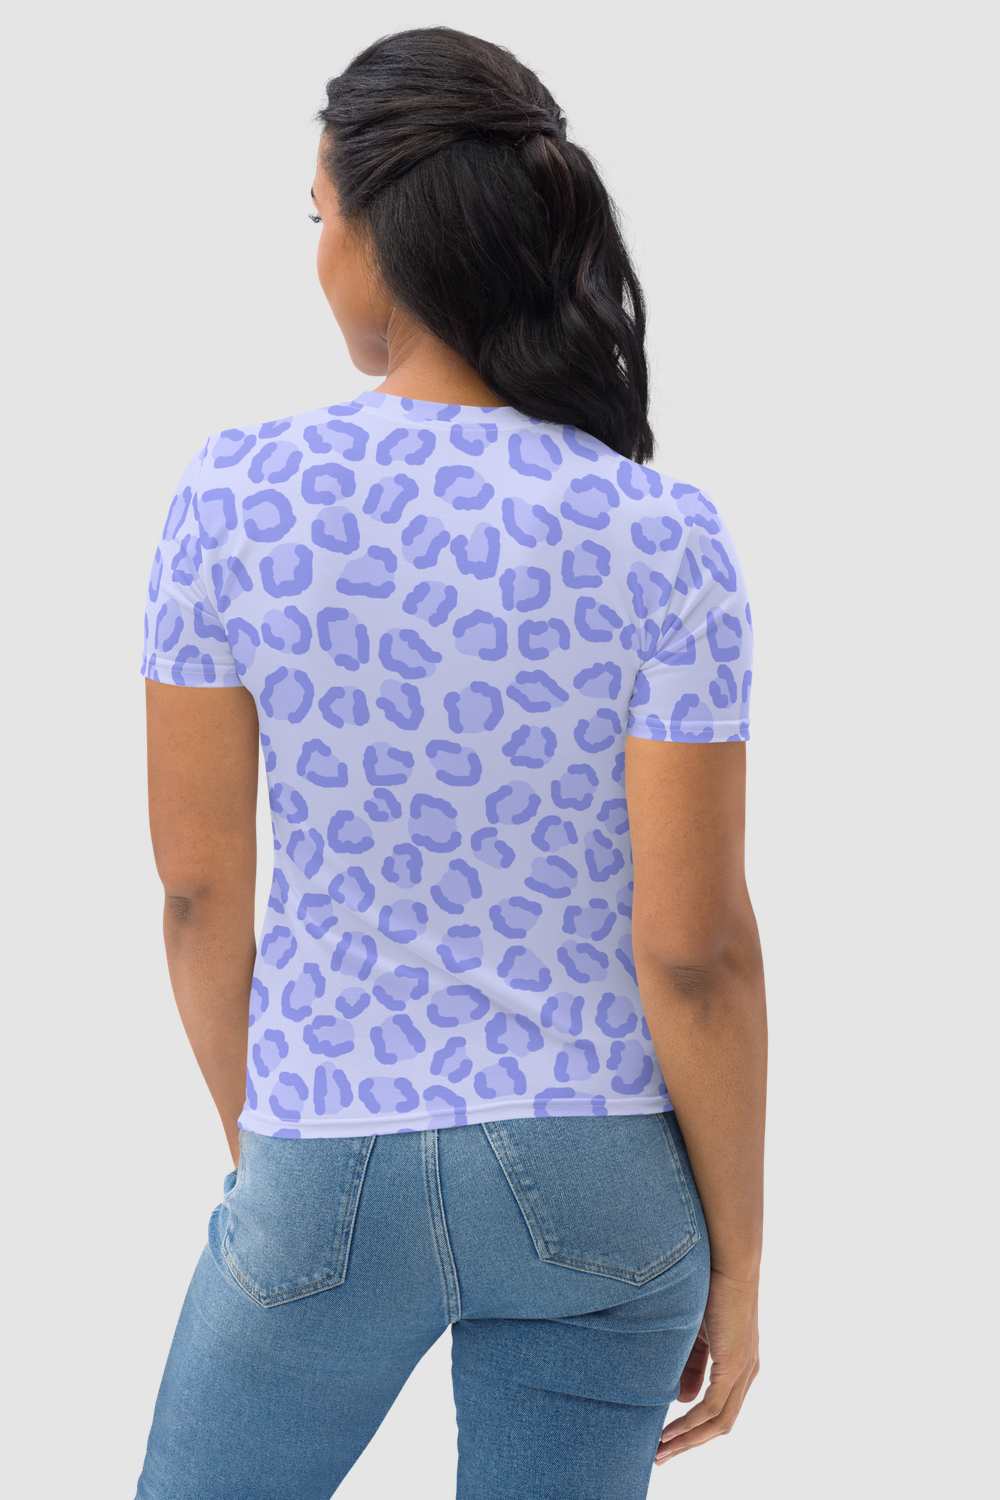 Sky Blue Leopard Print Women's T-Shirt